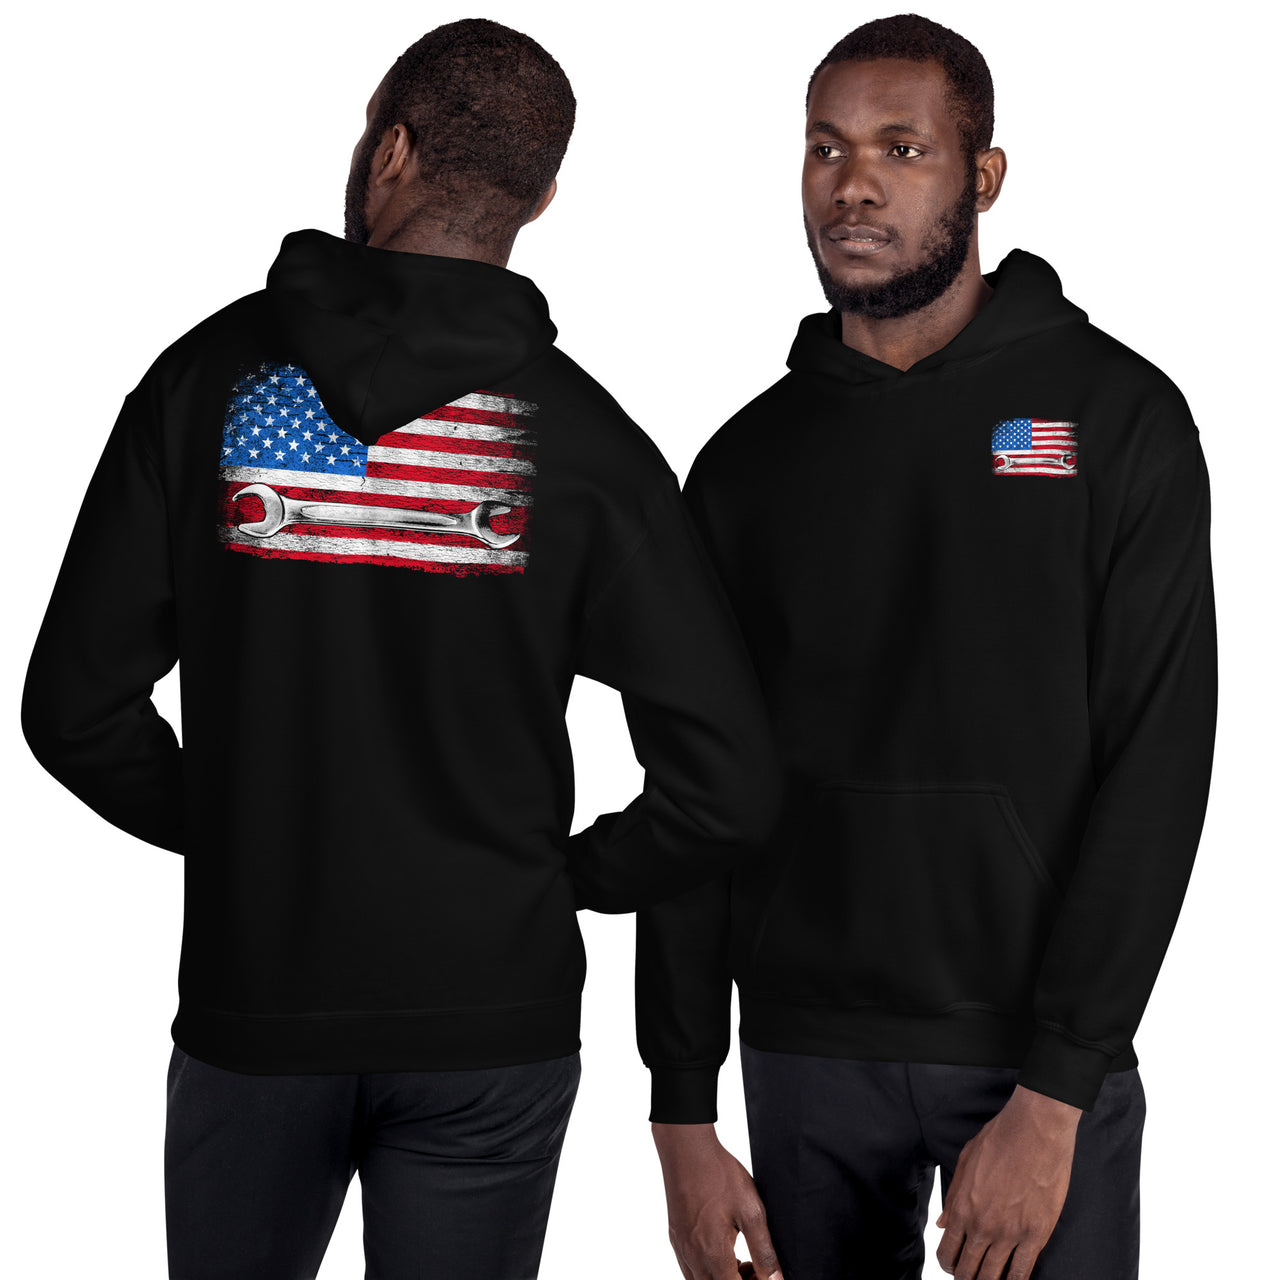 American Flag Mechanic Hoodie Sweatshirt modeled in black